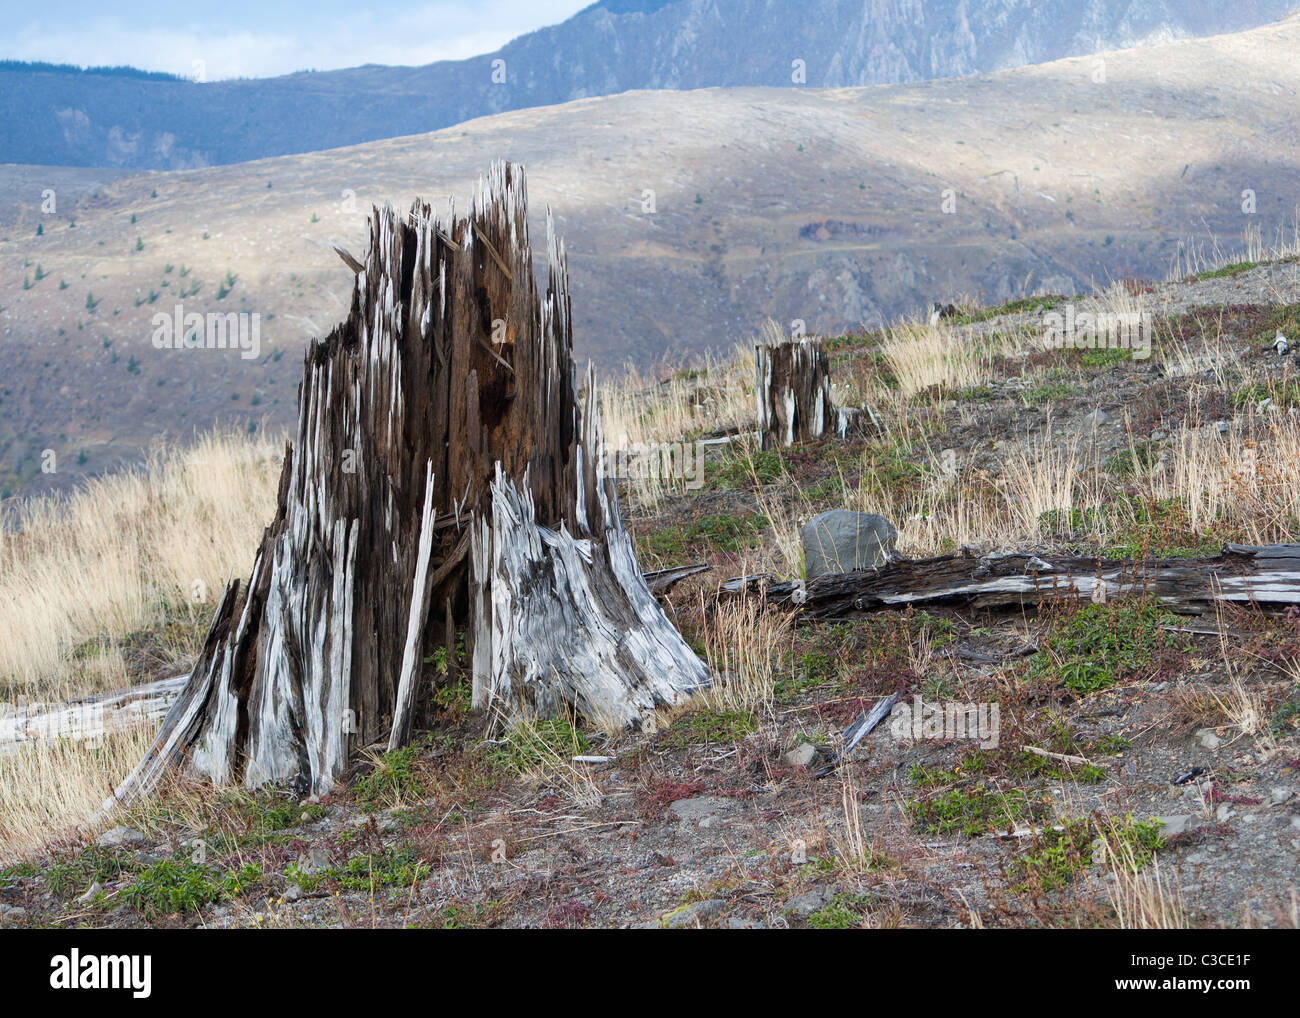 zersplitterte Baumstumpf geblasen der Vulkan Mount St. Helens explodierte und die umliegende Wälder ausgerottet Stockfoto